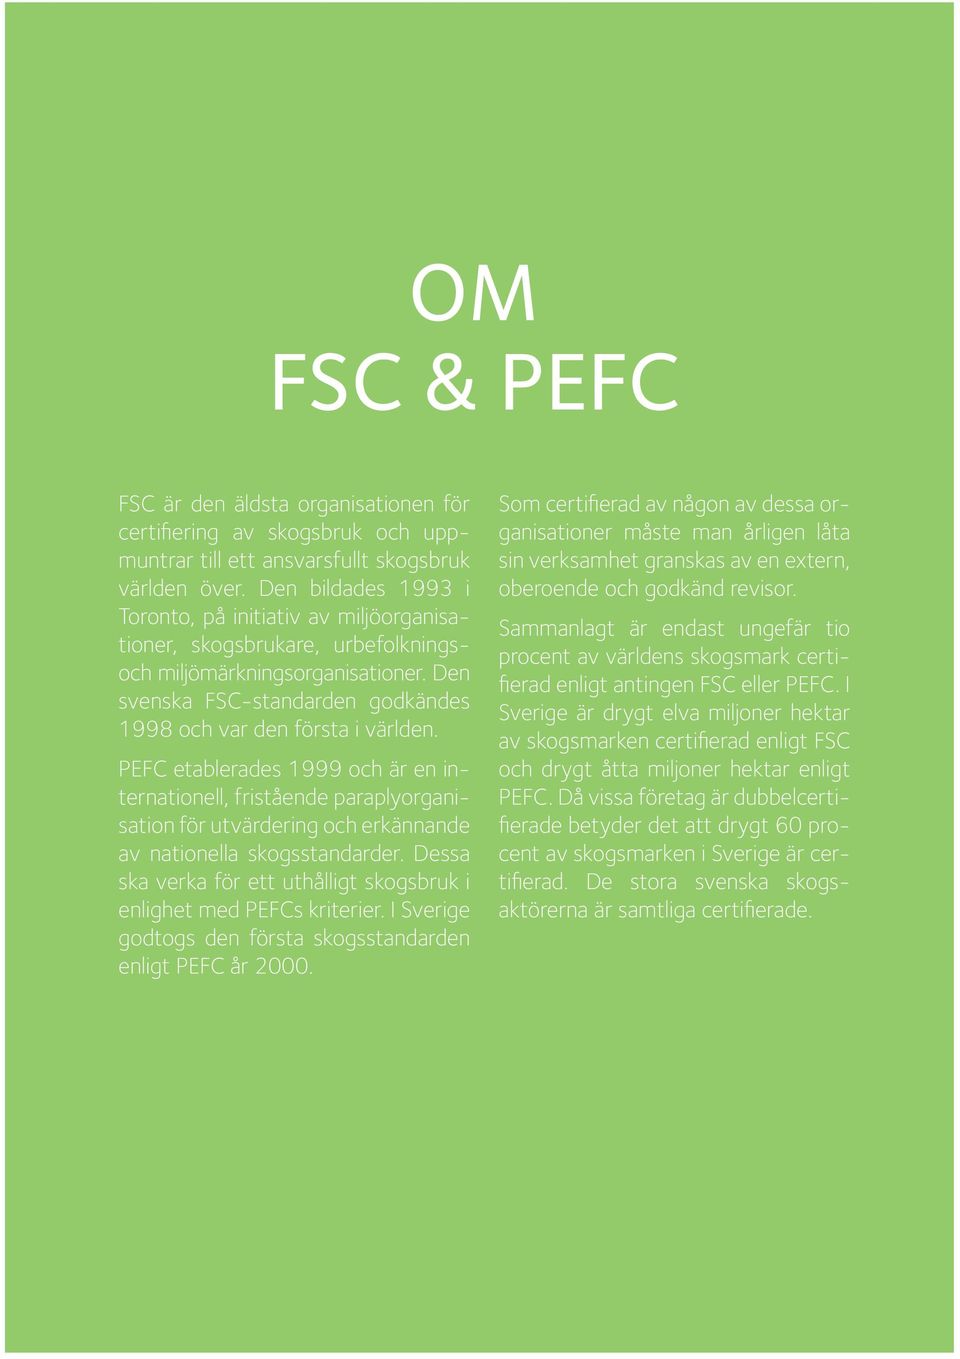 PEFC etablerades 1999 och är en internationell, fristående paraplyorganisation för utvärdering och erkännande av nationella skogsstandarder.